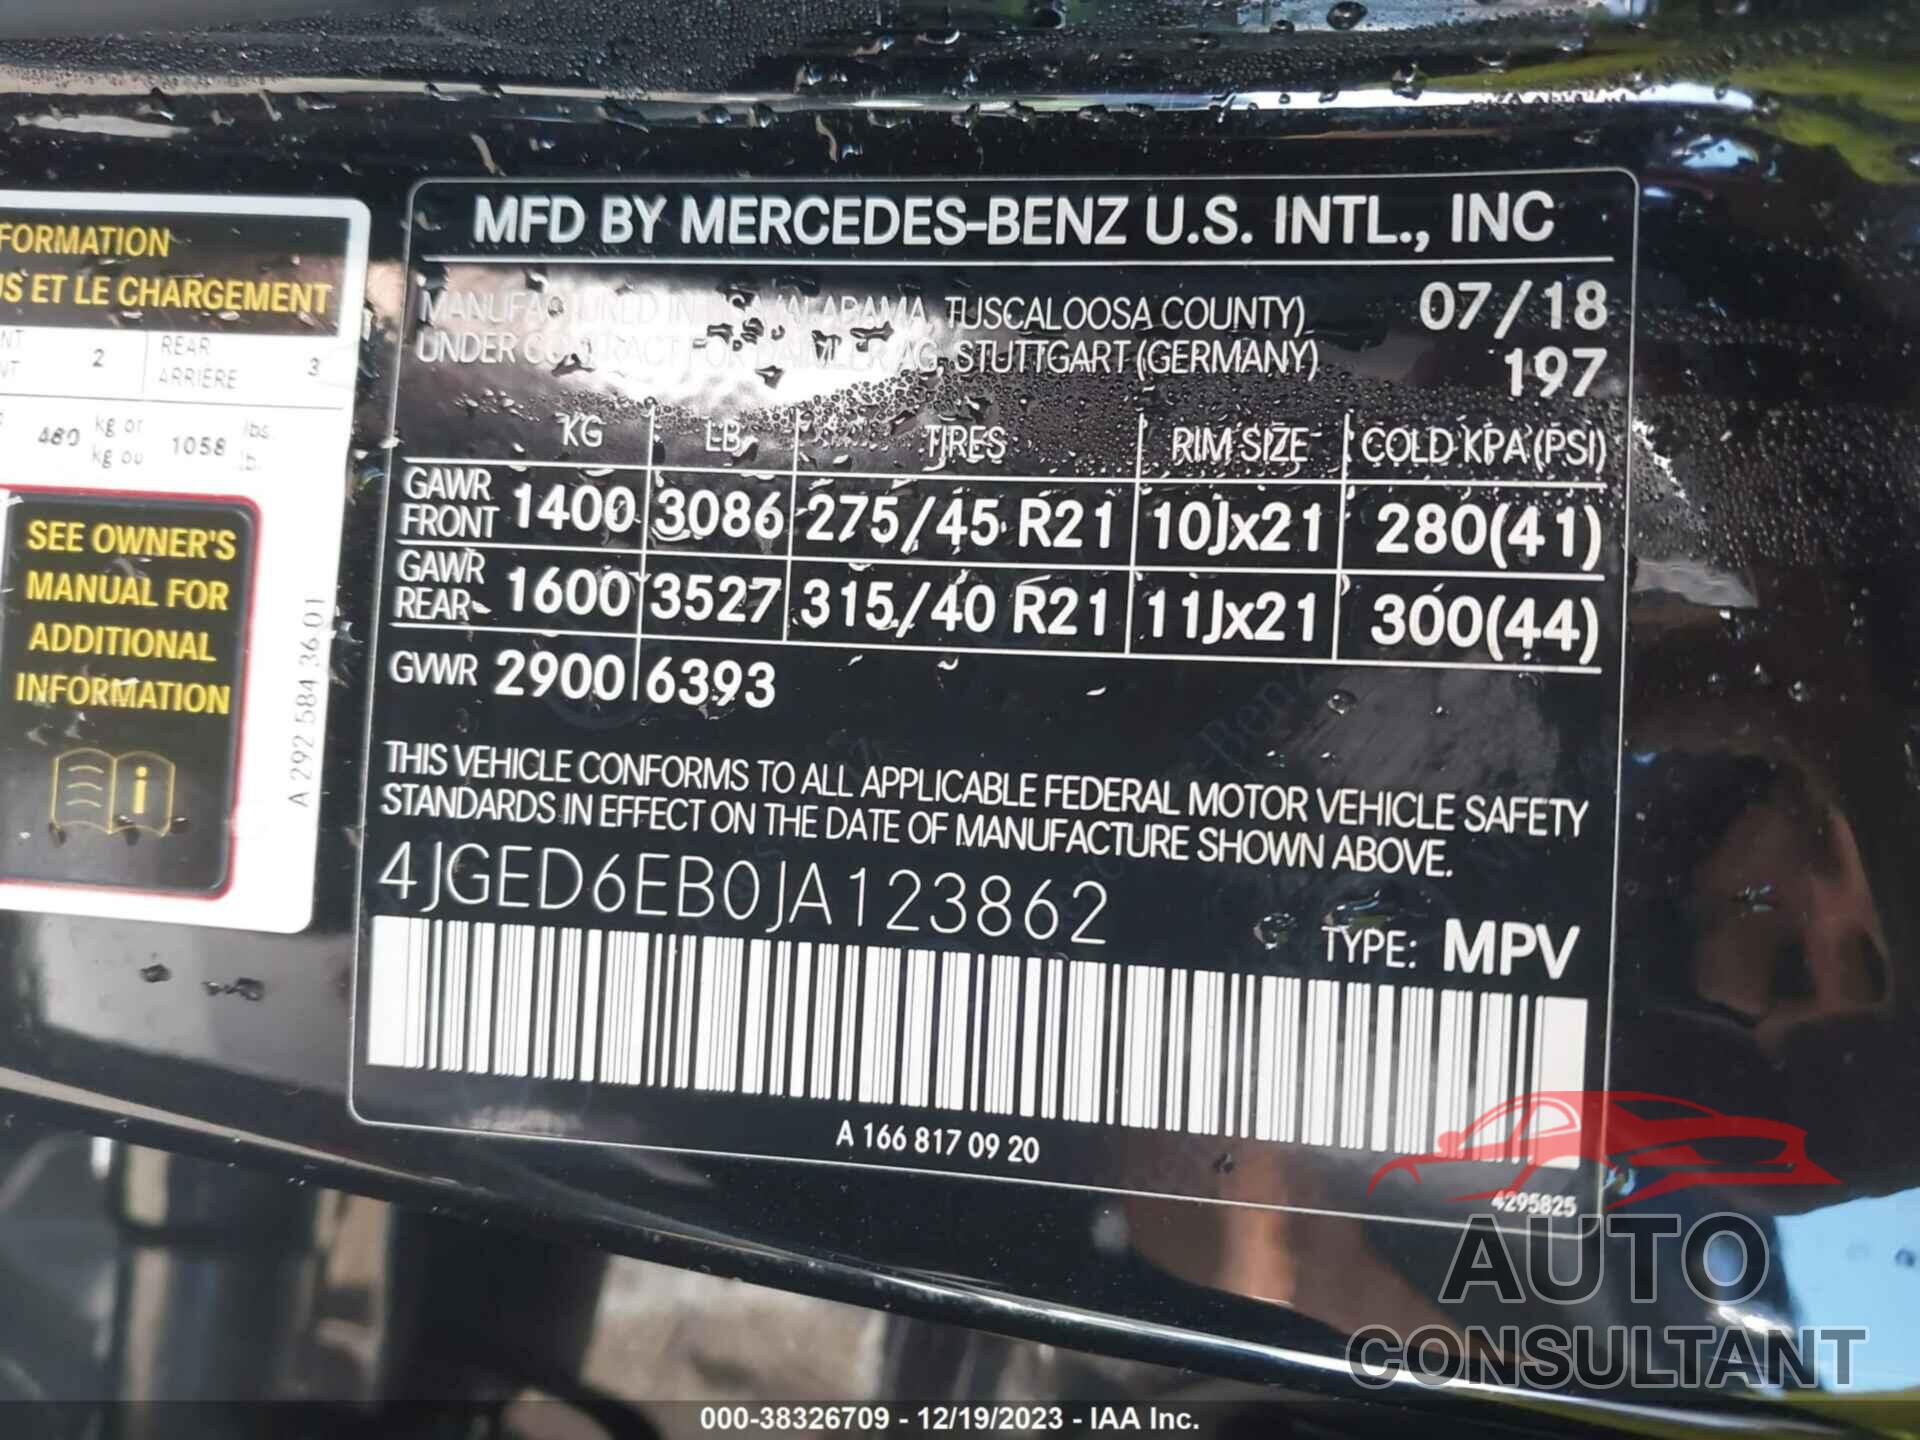 MERCEDES-BENZ AMG GLE 43 COUPE 2018 - 4JGED6EB0JA123862